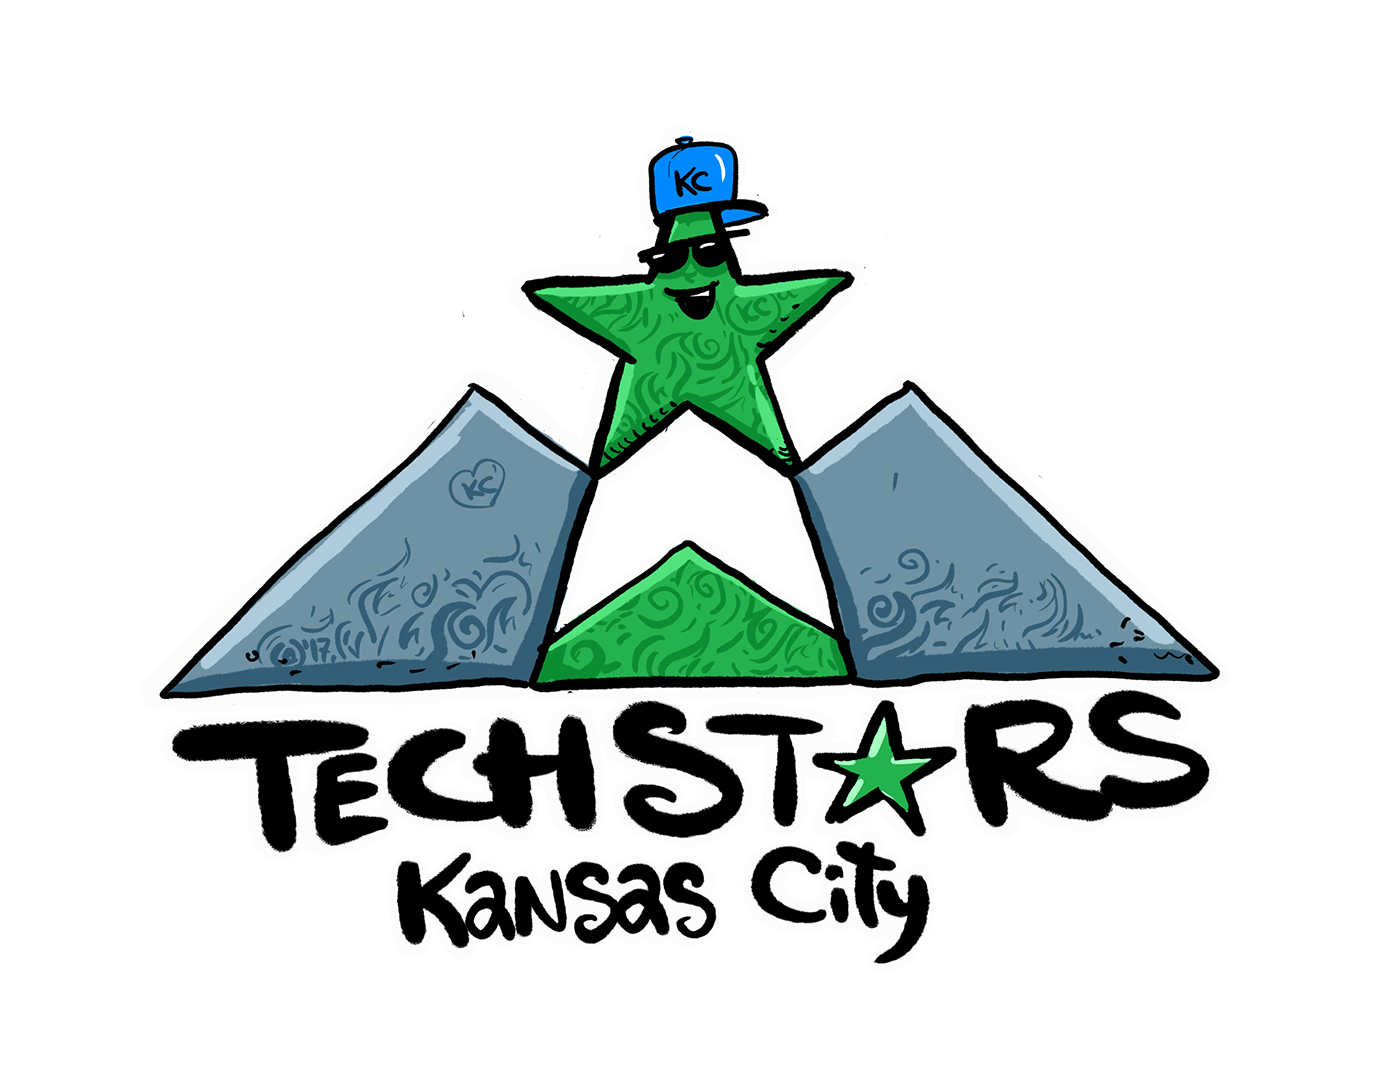 Badges branding  ILLUSTRATION  kansas city TechStars